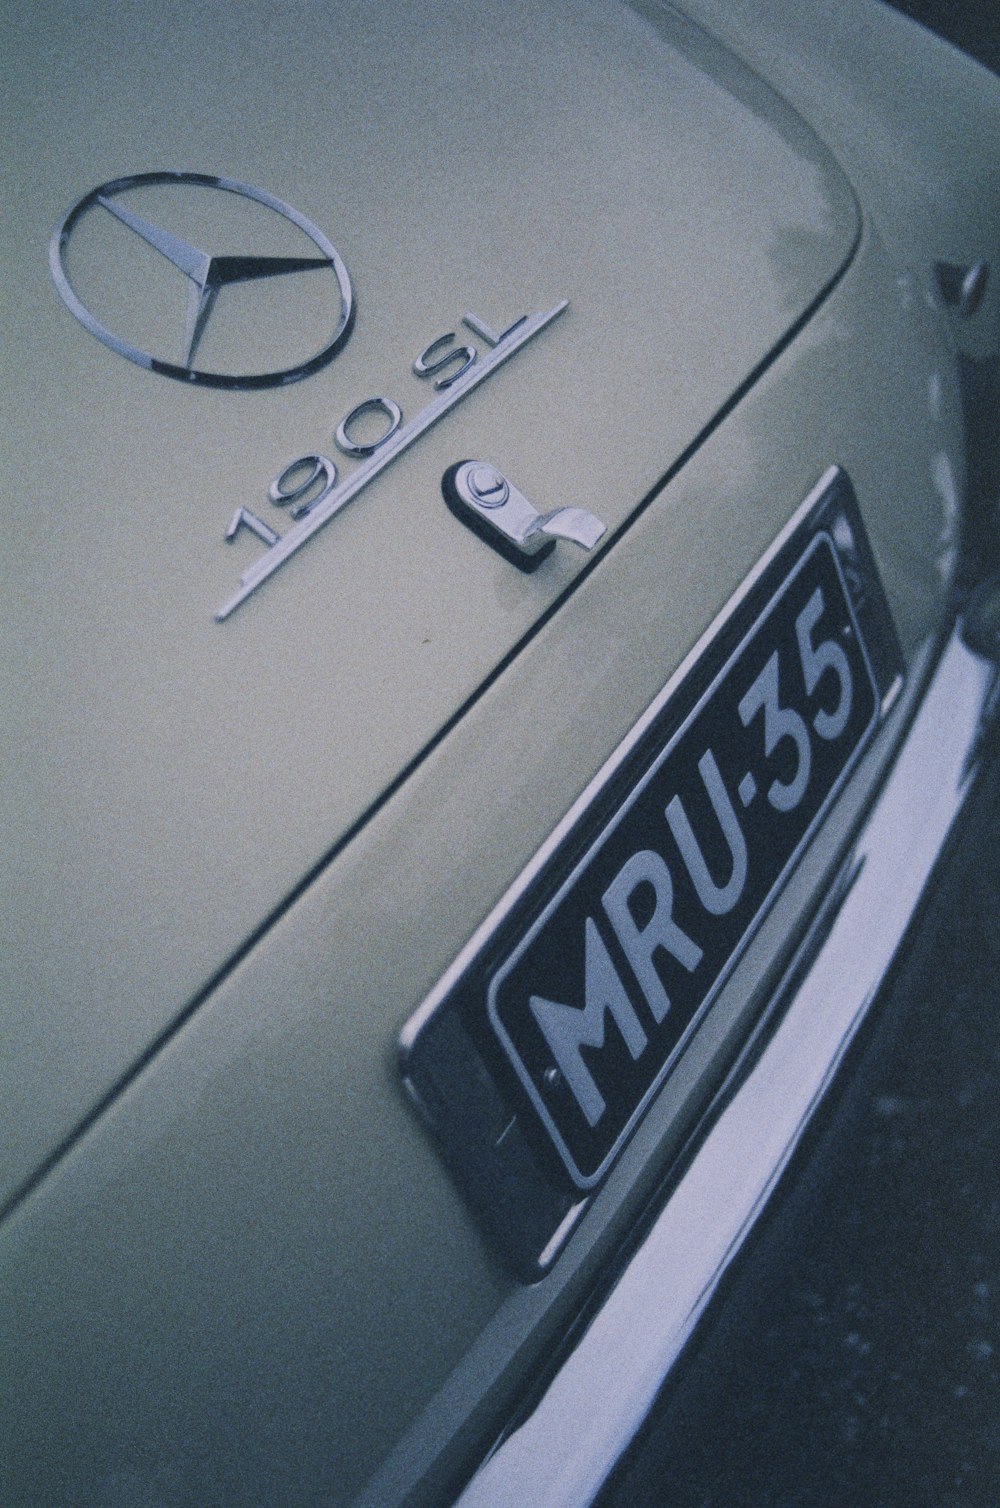 a close up of a mercedes emblem on a car